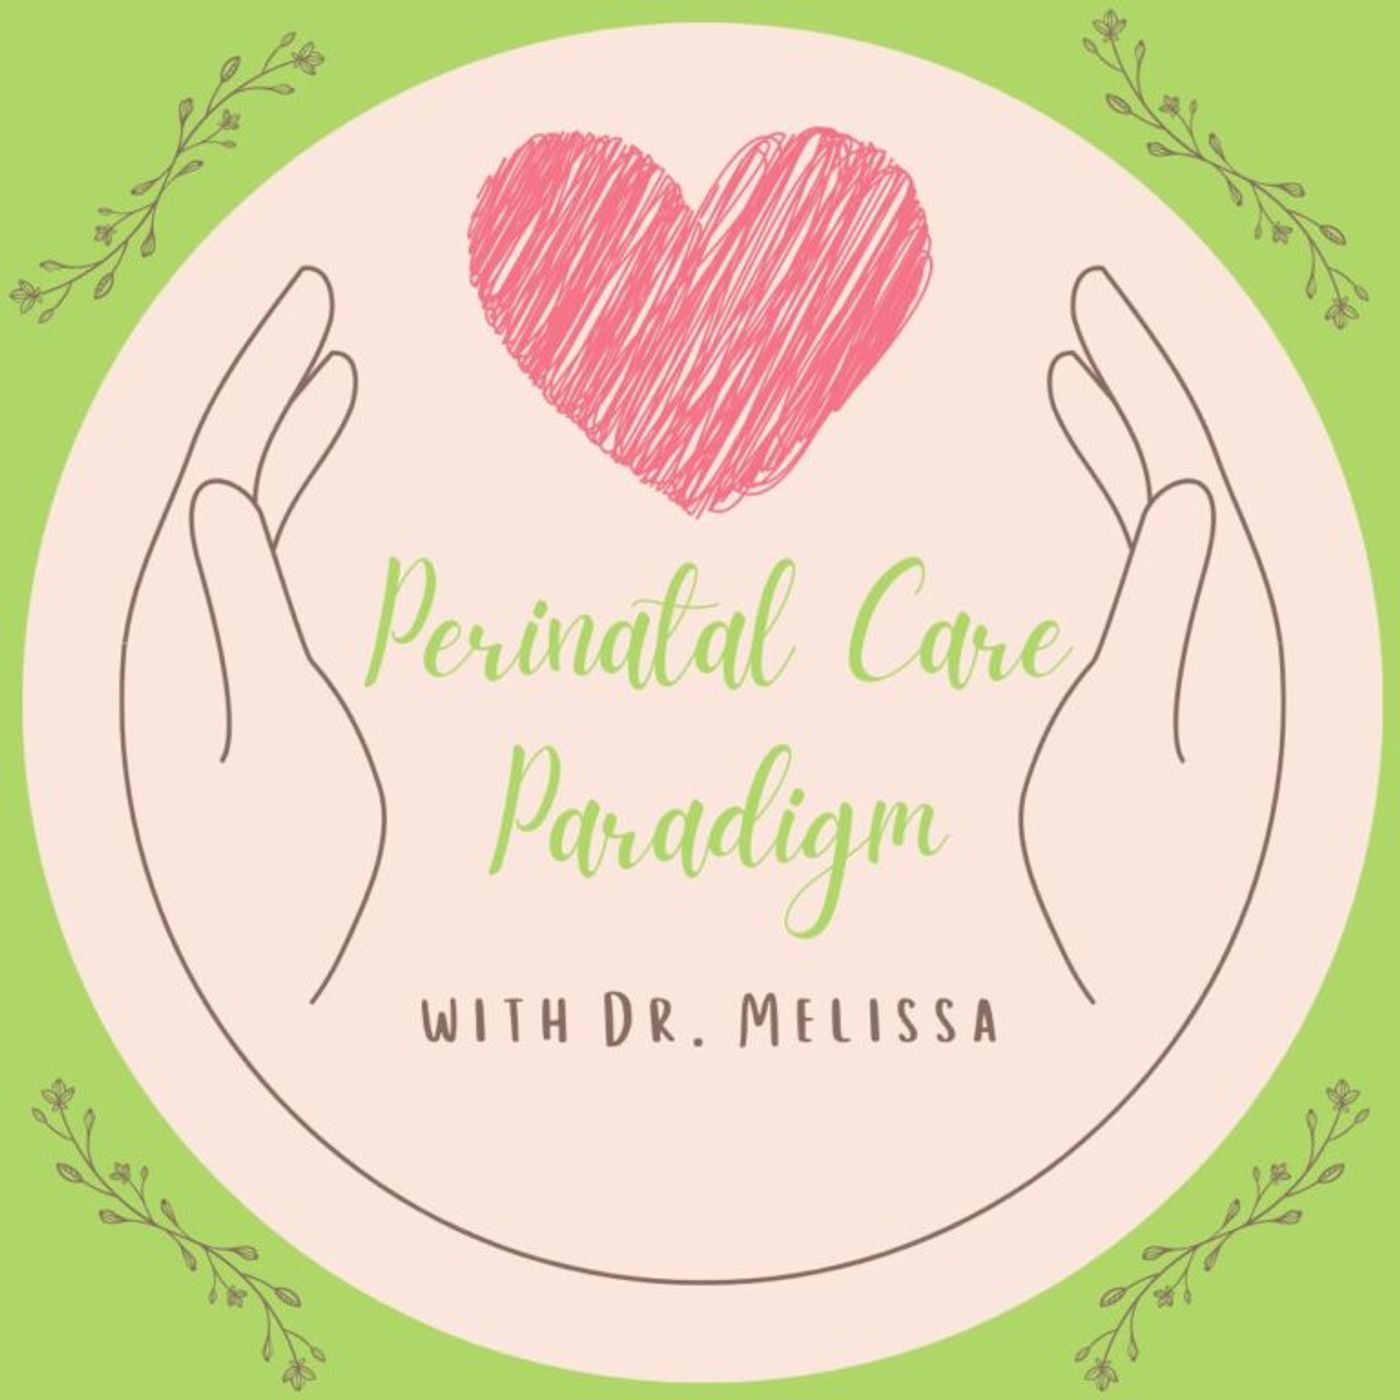 The Perinatal Care Paradigm